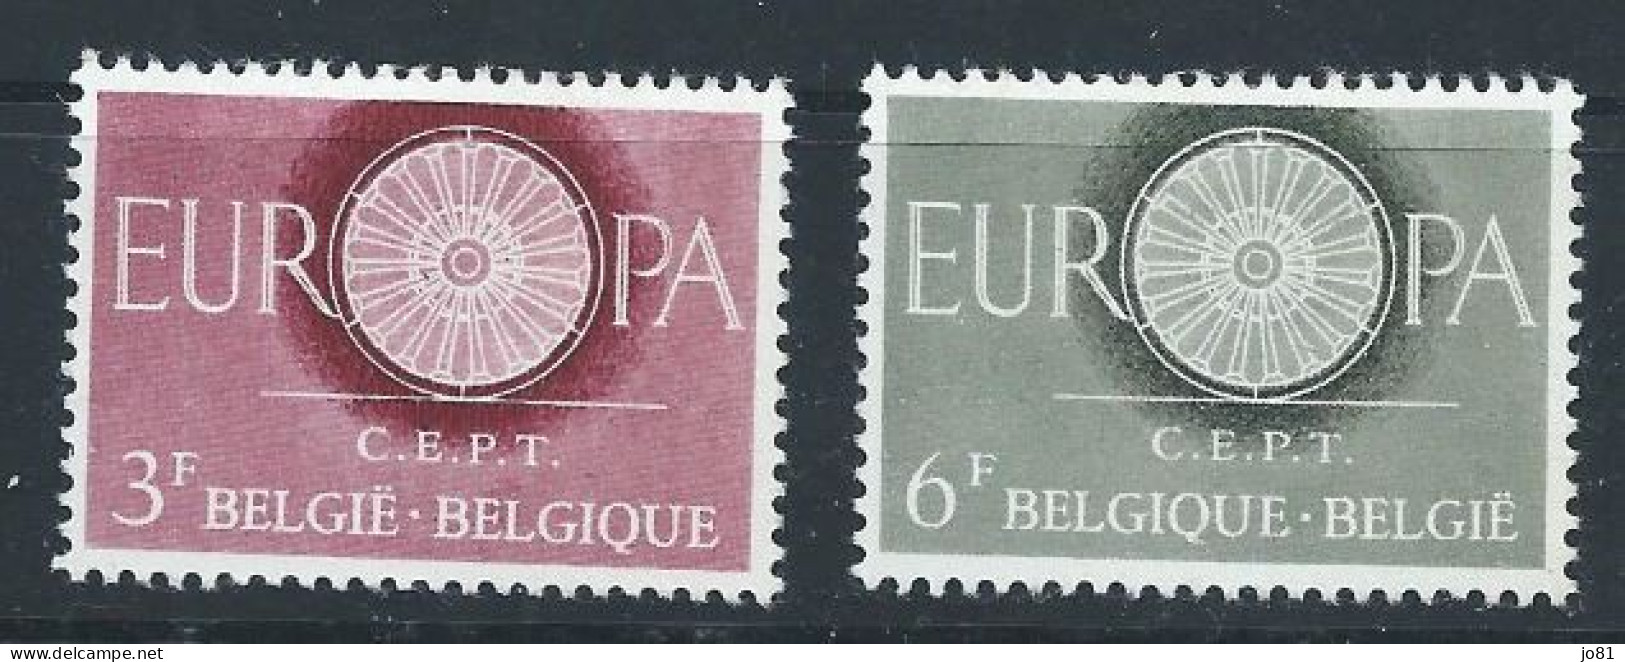 Belgique YT 1150-1151 Neuf Sans Charnière - XX - MNH Europa 1960 - Nuevos